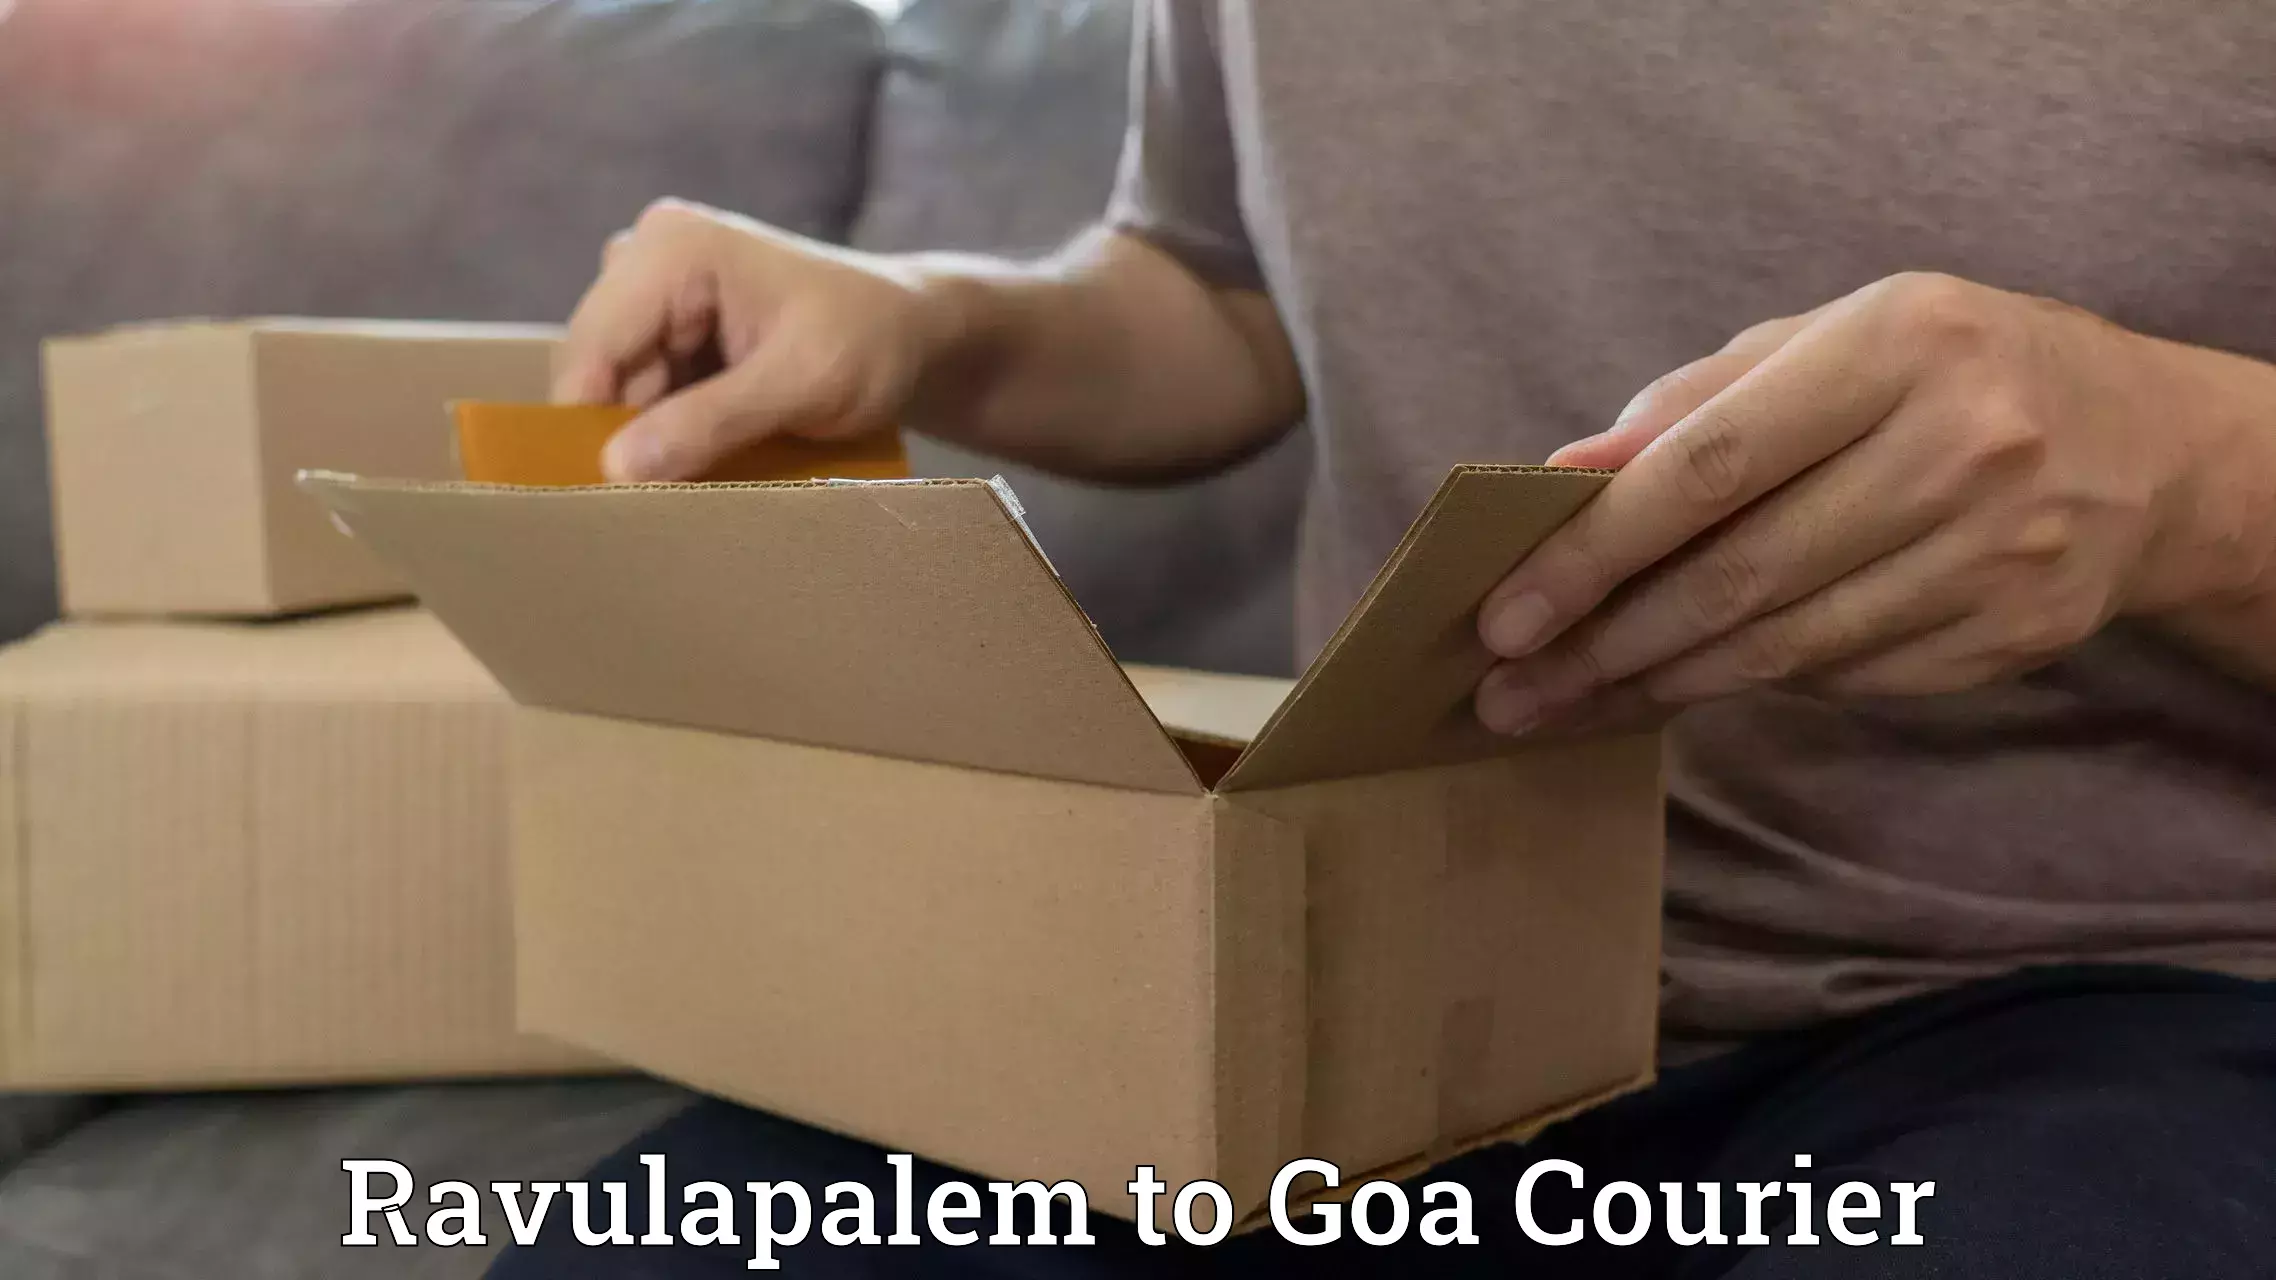 Courier service comparison Ravulapalem to Goa